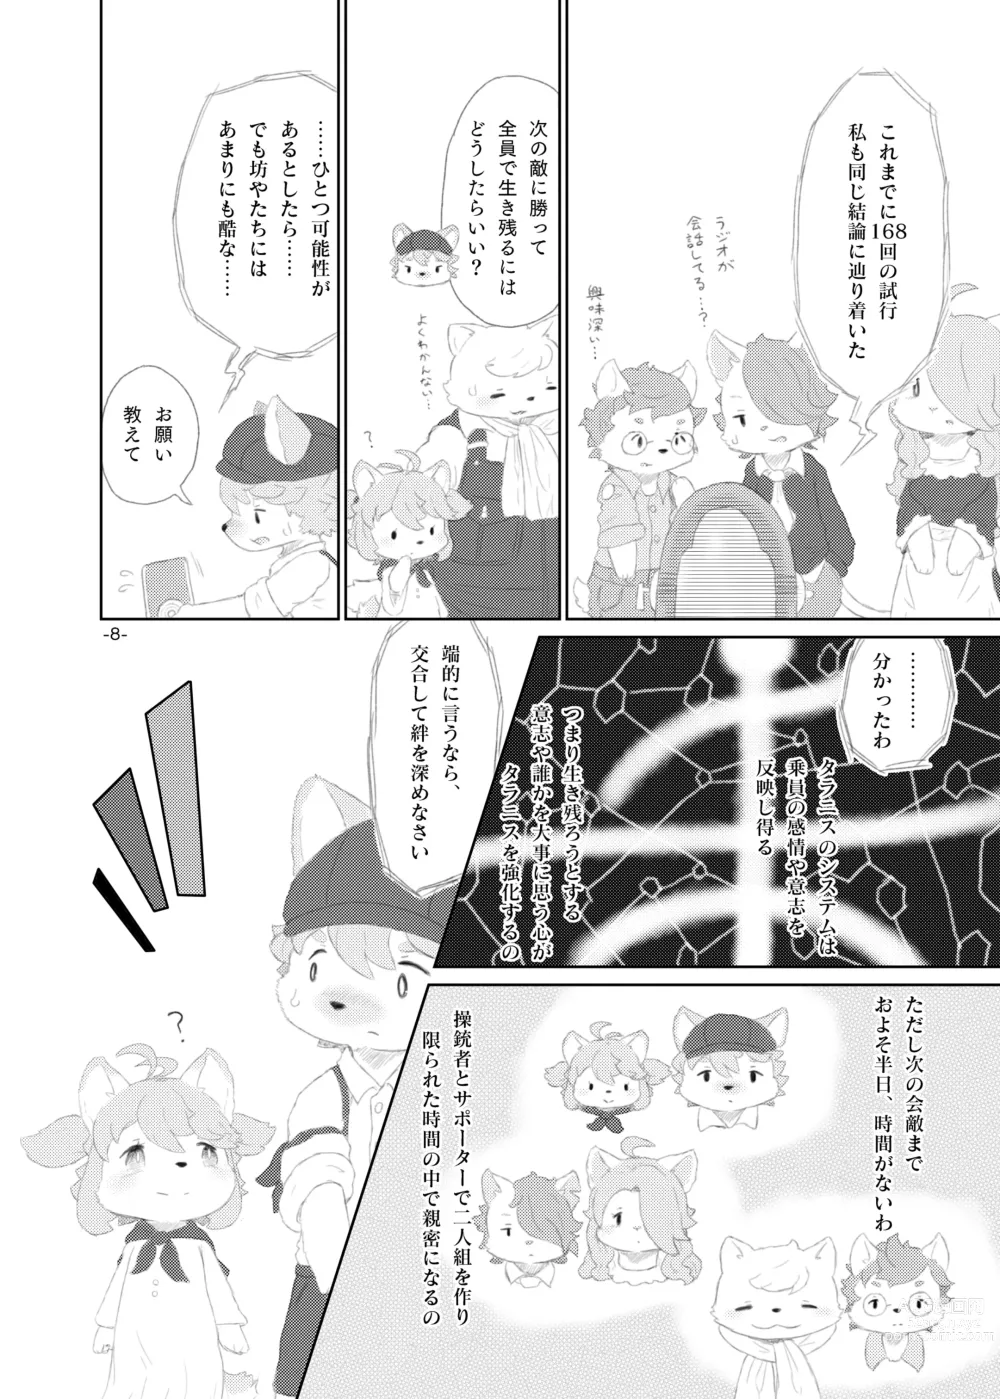 Page 7 of doujinshi Shinai Level 10+